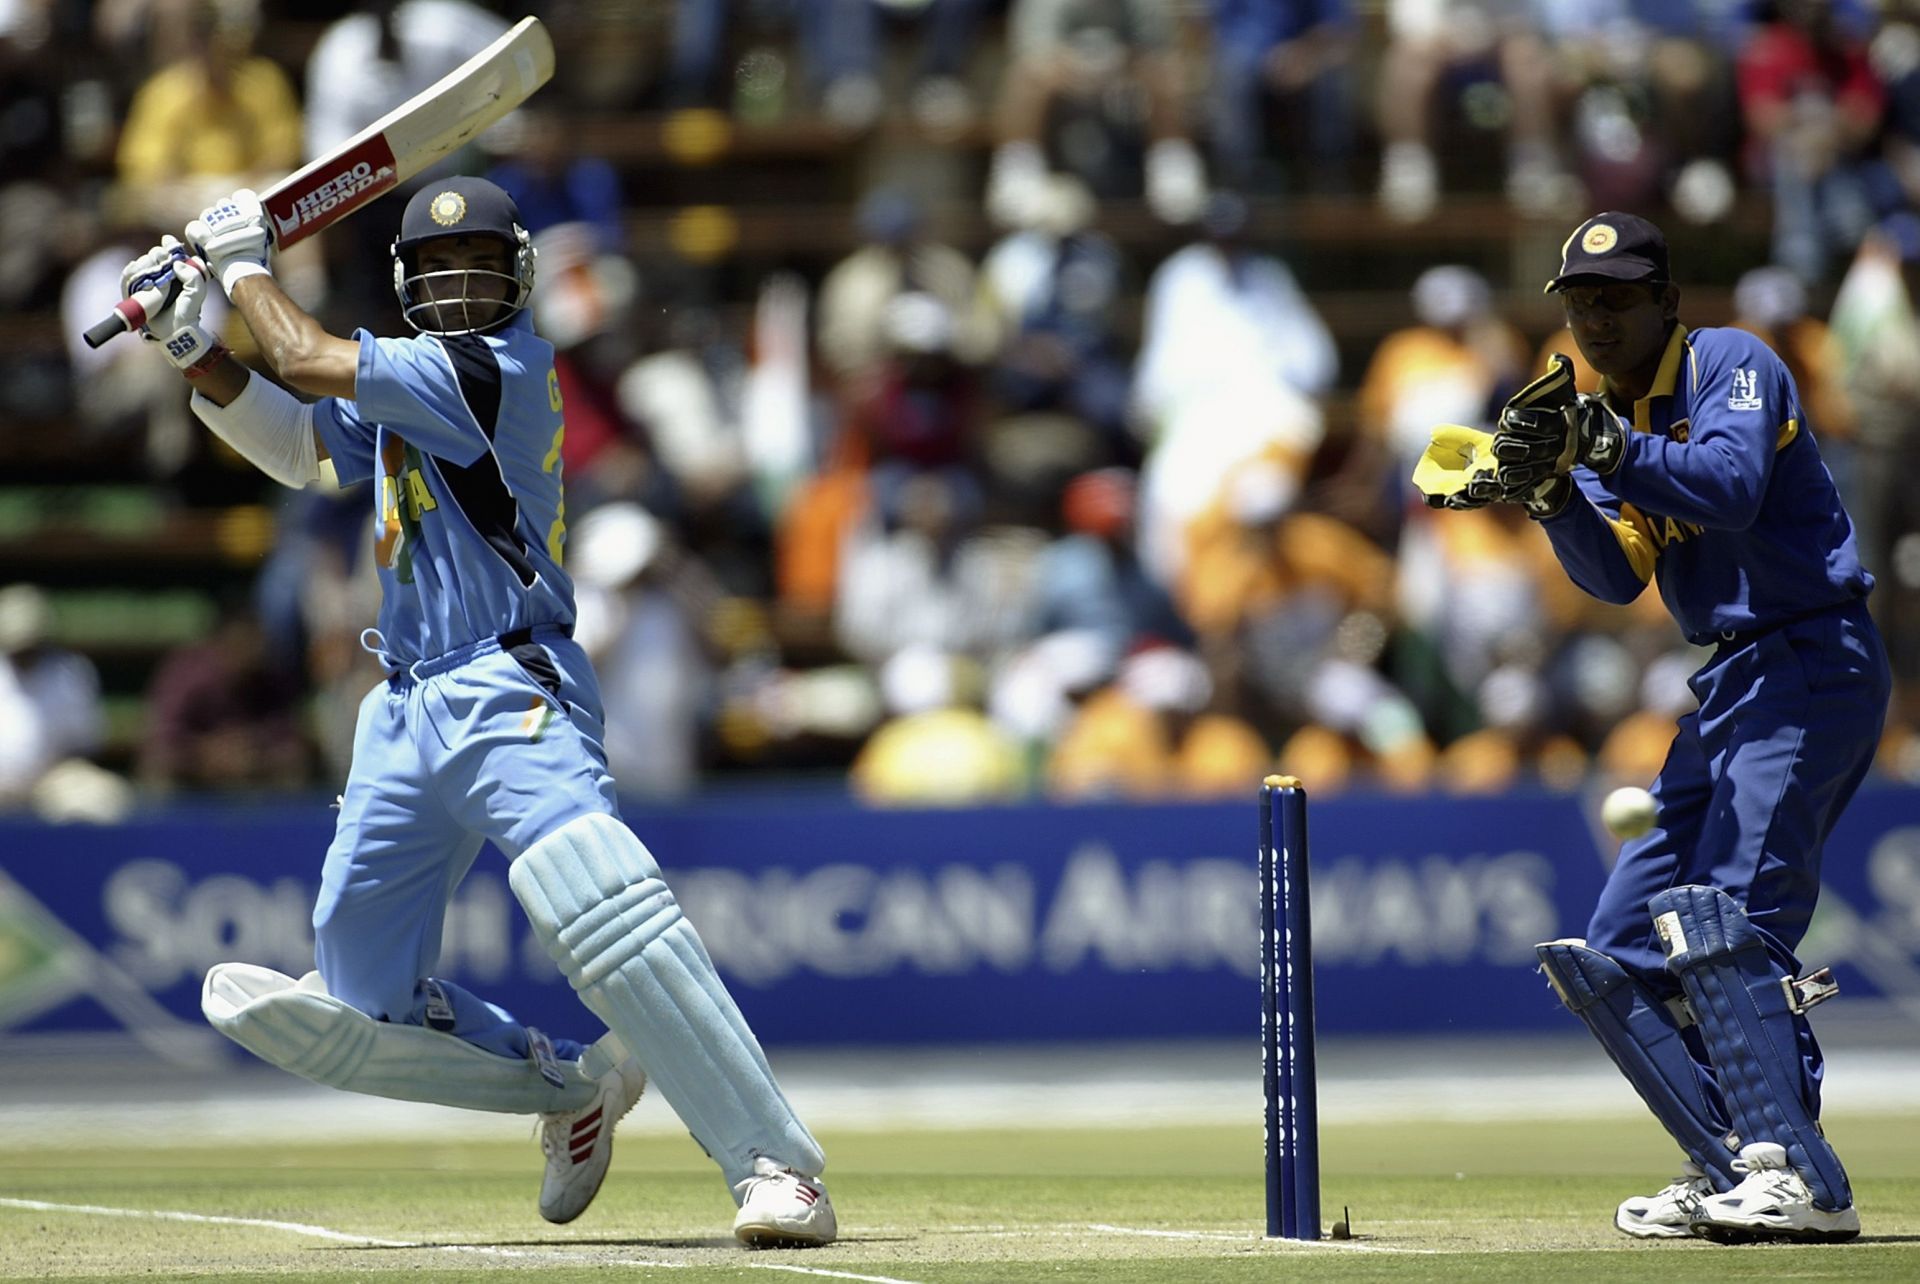 Sourav Ganguly of India hits out as Kumar Sangakkara of Sri Lanka looks on (Image courtesy: Getty Images)